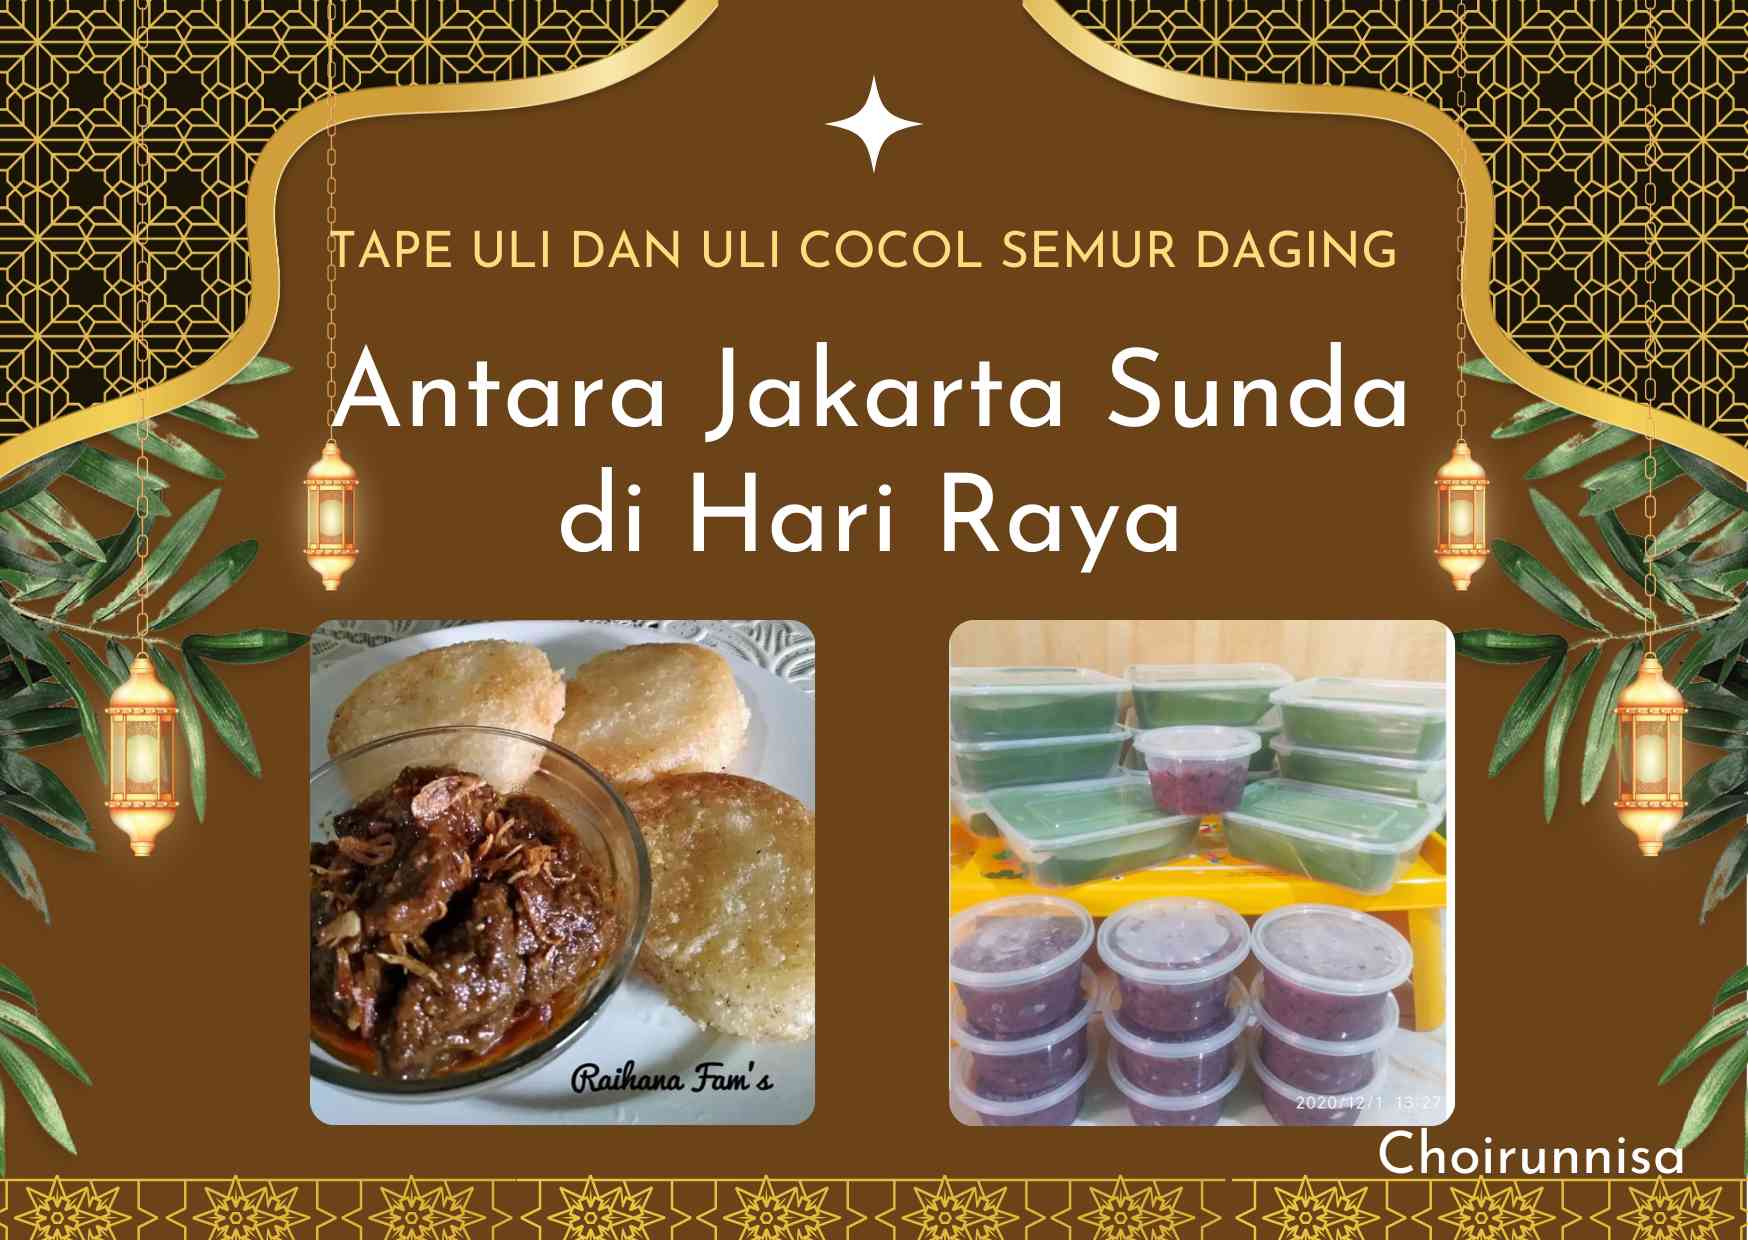 Tape Uli Khas Jakarta dan Uli Cocol Semur Daging Khas Sunda, Dua Budaya Menyatu di Hari Raya